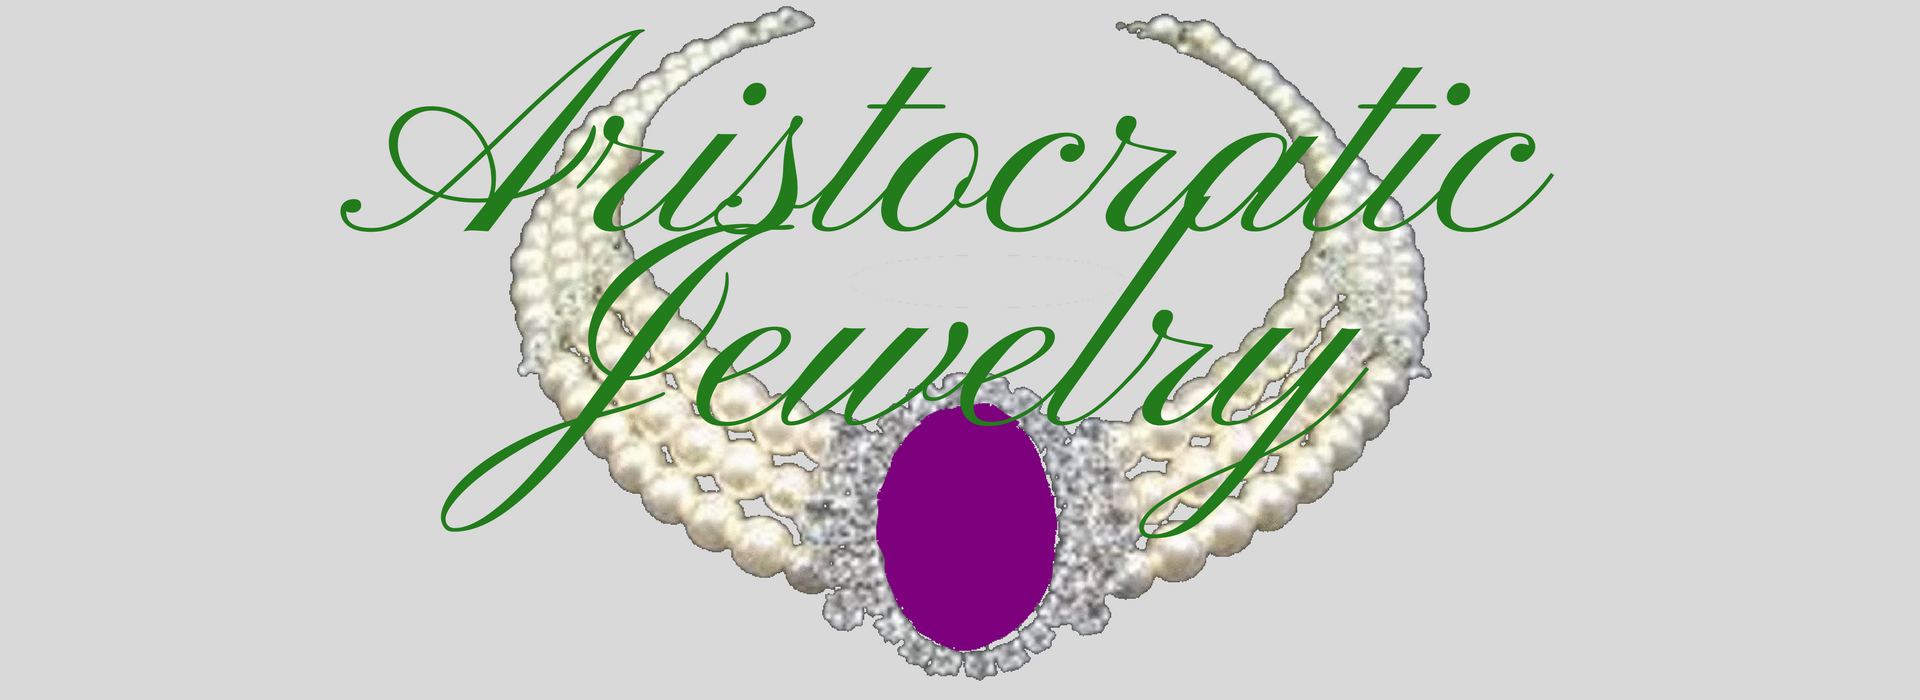 Aristocratic Jewelry